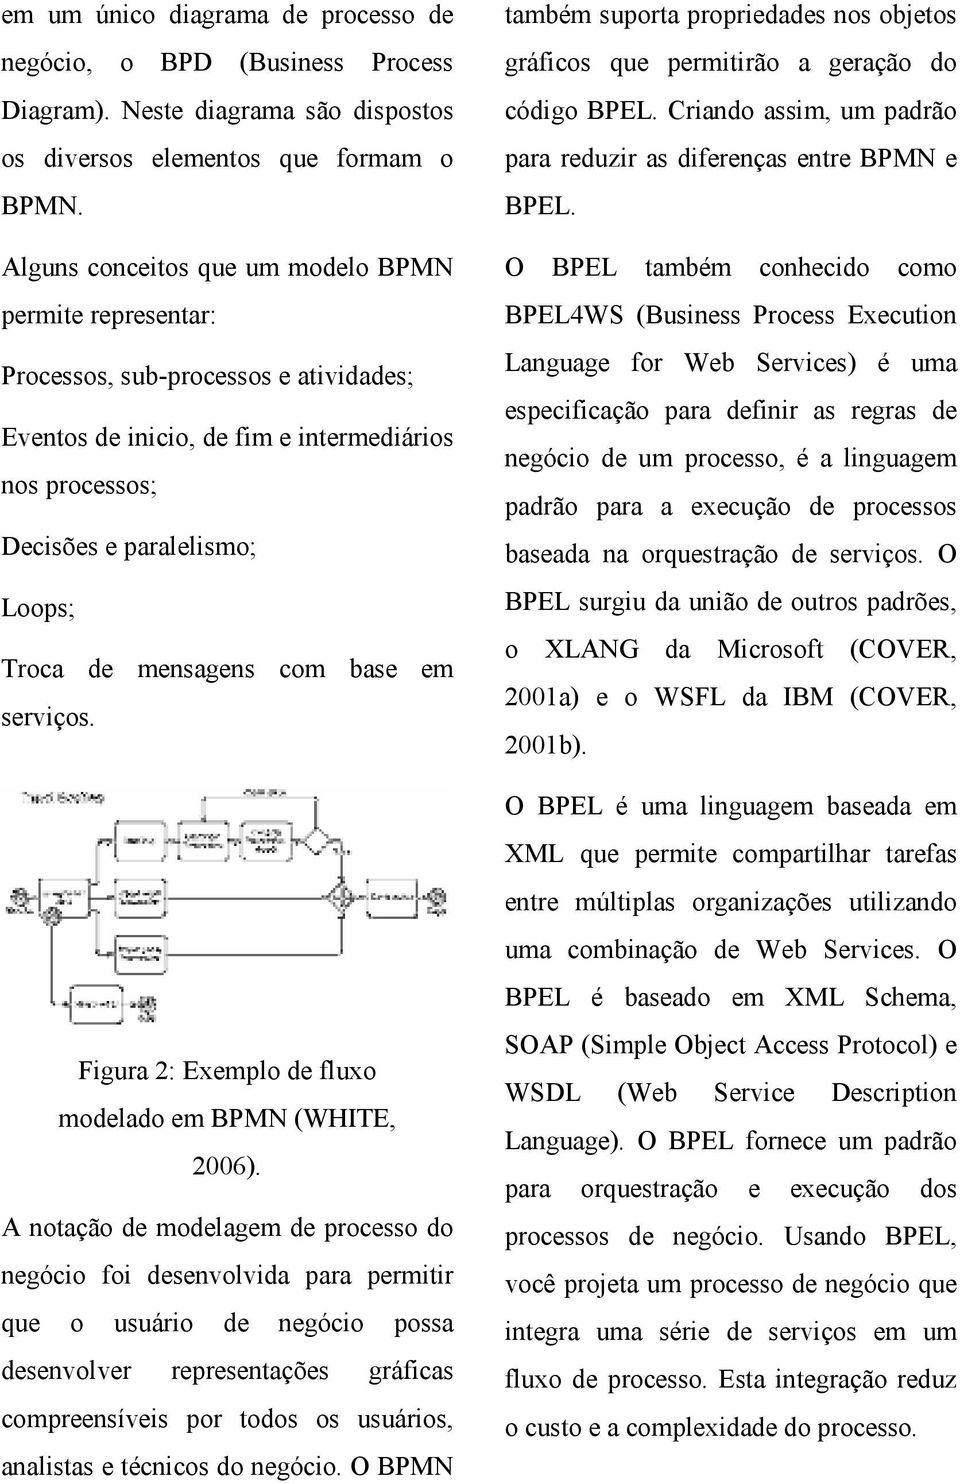 mensagens com base em serviços. Figura 2: Exemplo de fluxo modelado em BPMN (WHITE, 2006).